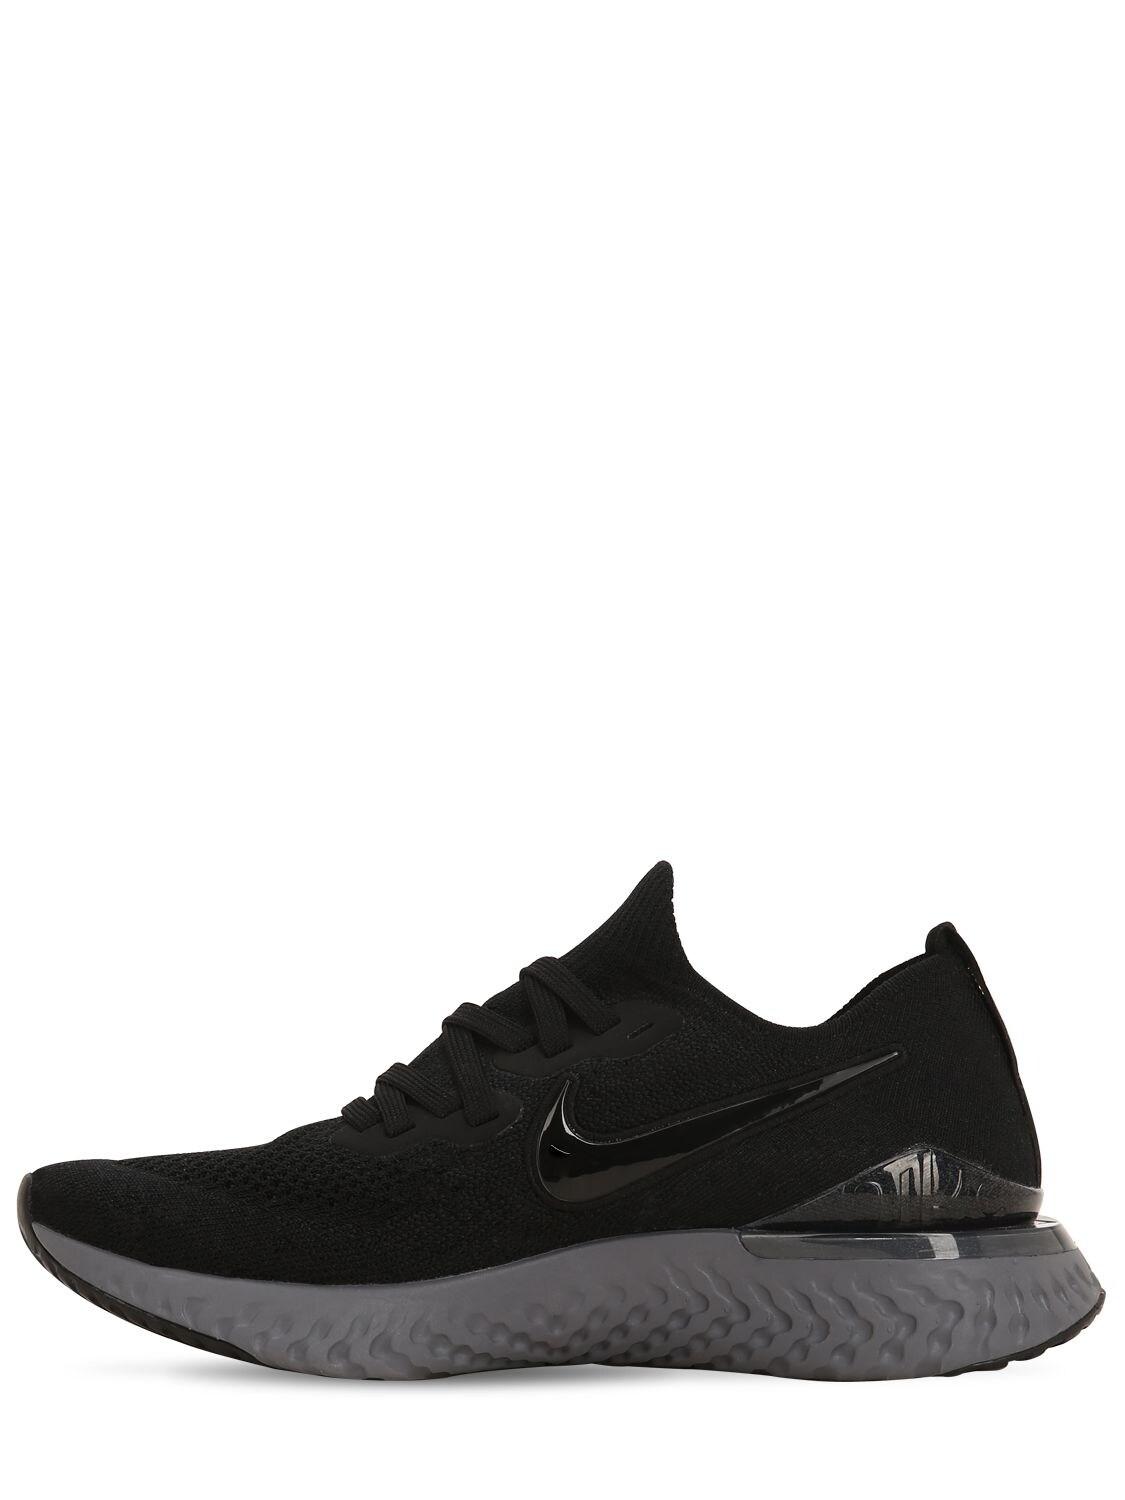 Nike Epic React Flyknit 2 Sneakers in Black - Lyst